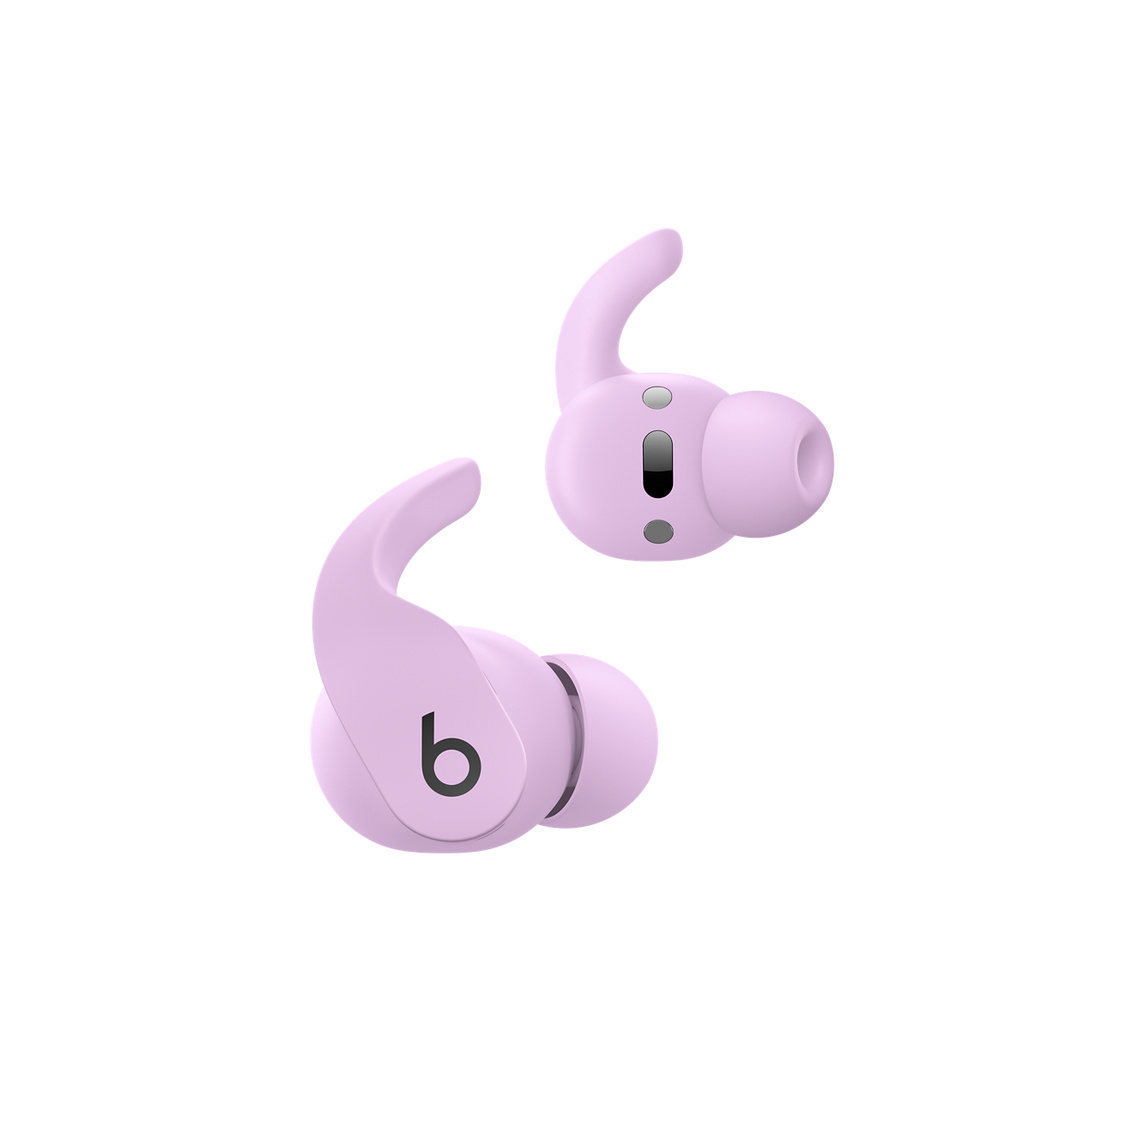 Beats Fit Pro, o autêntico fone de ouvido sem fio, na cor roxo pastel, mostrando os controles nos fones para atender ligações e controlar a música. 